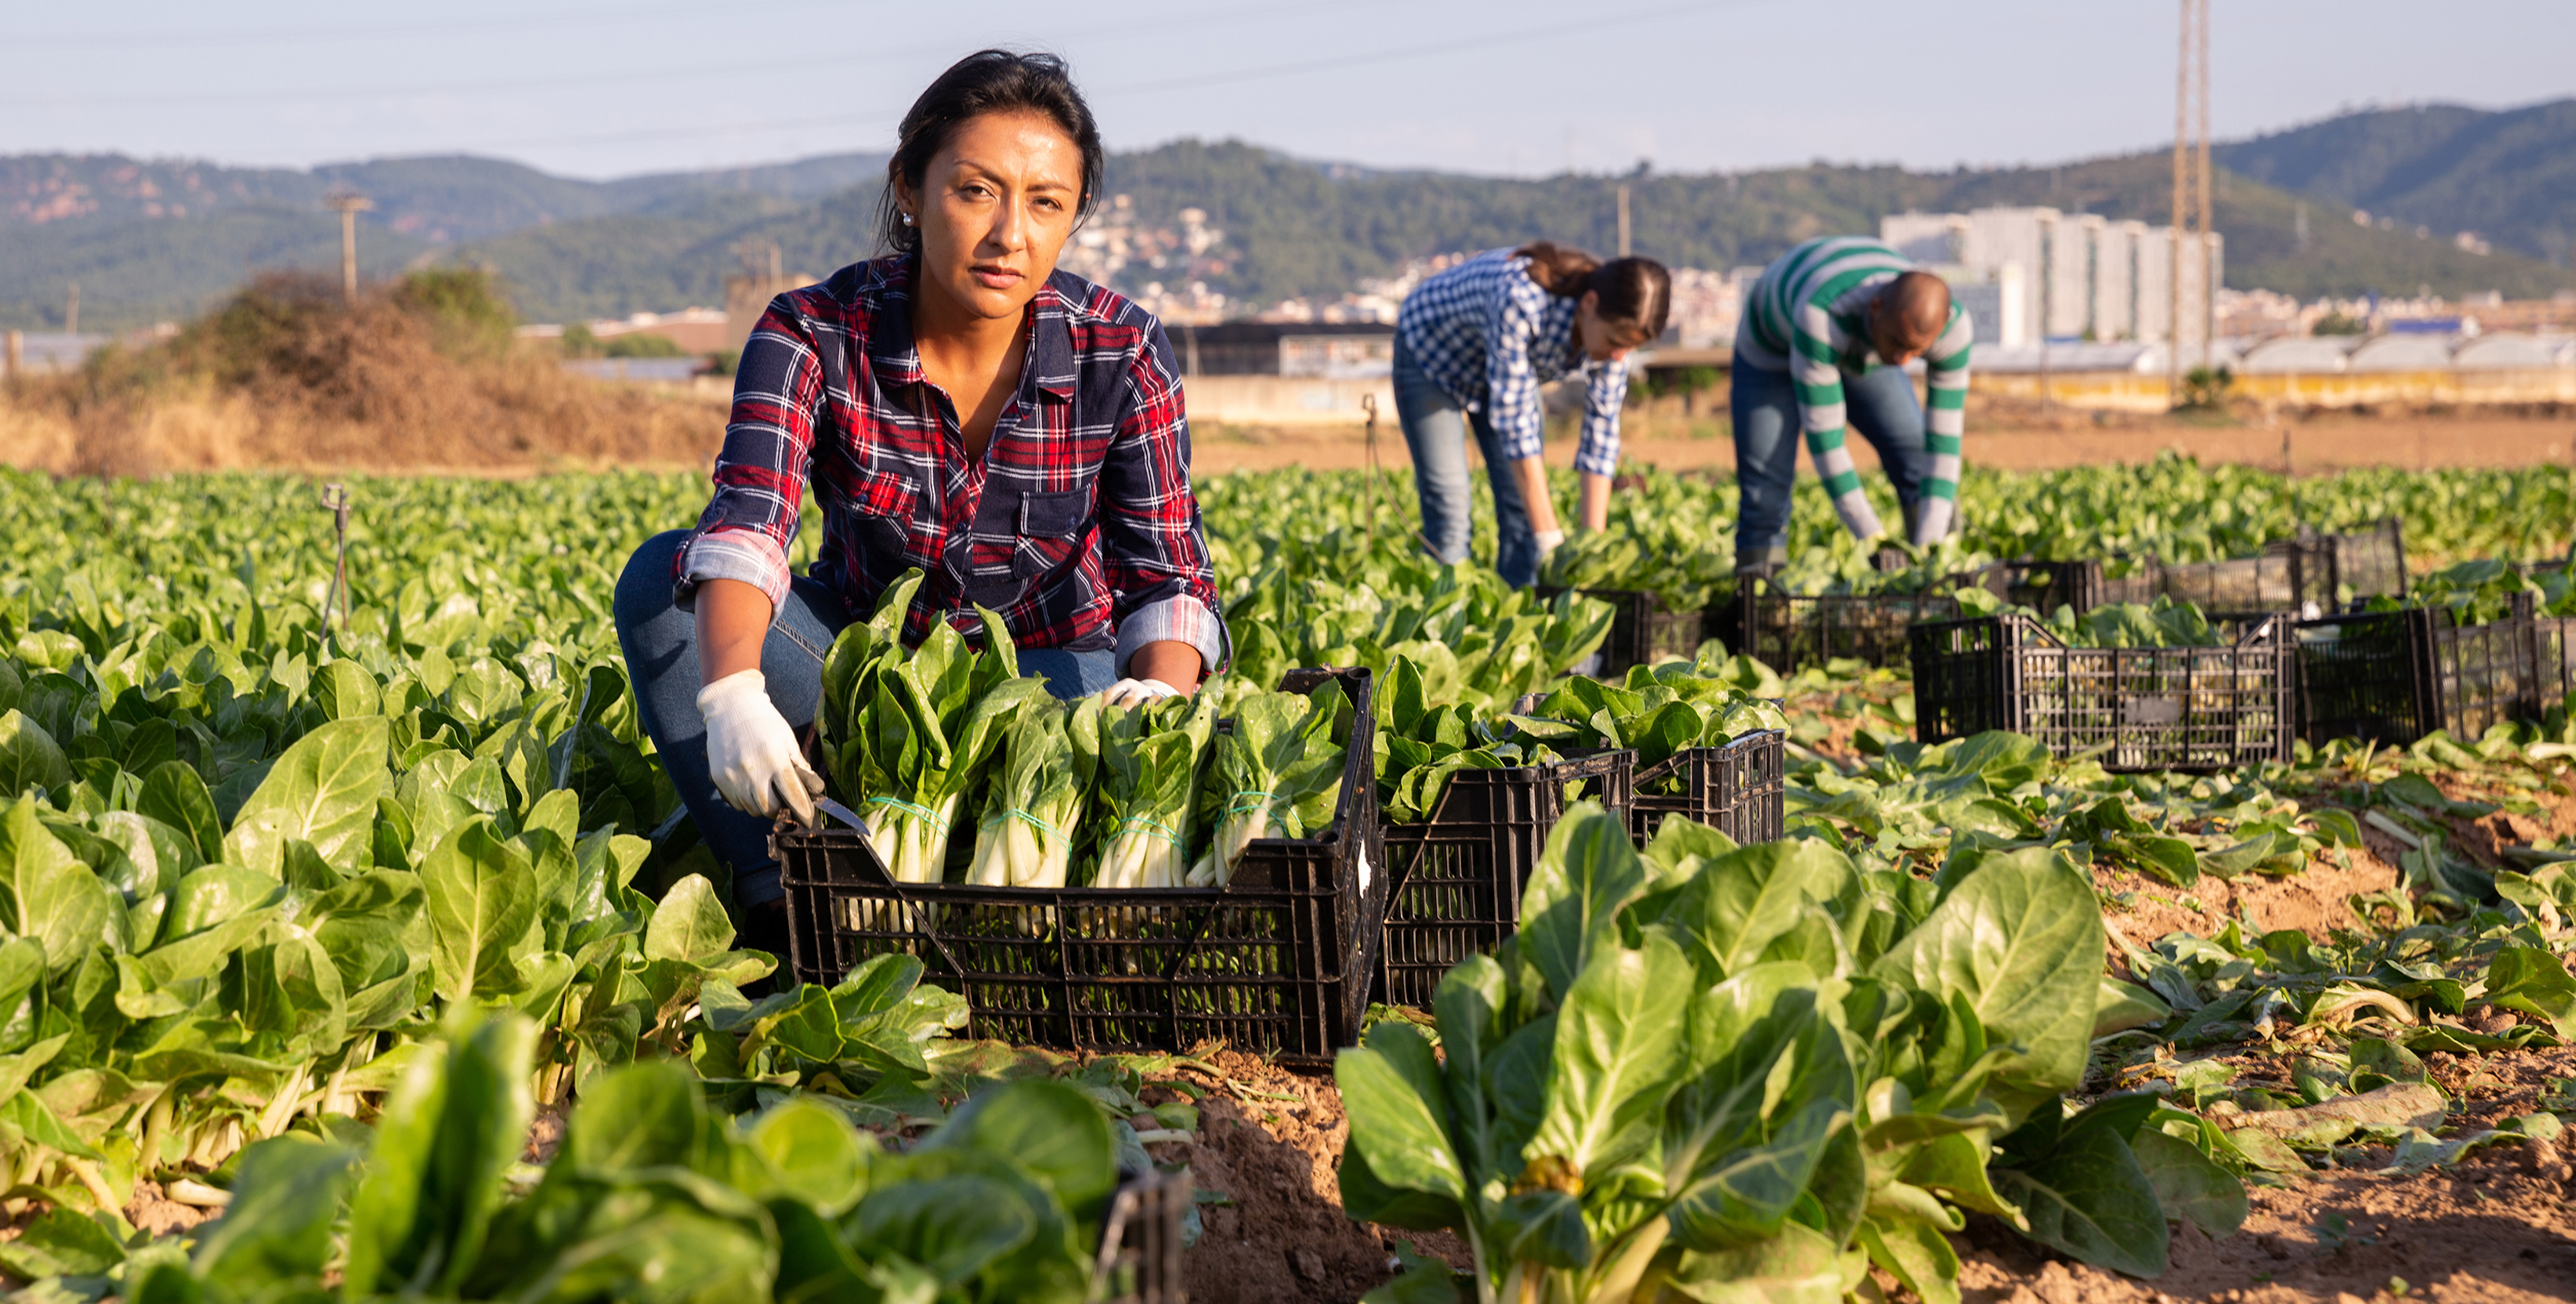 Female farm worker picking crops in field